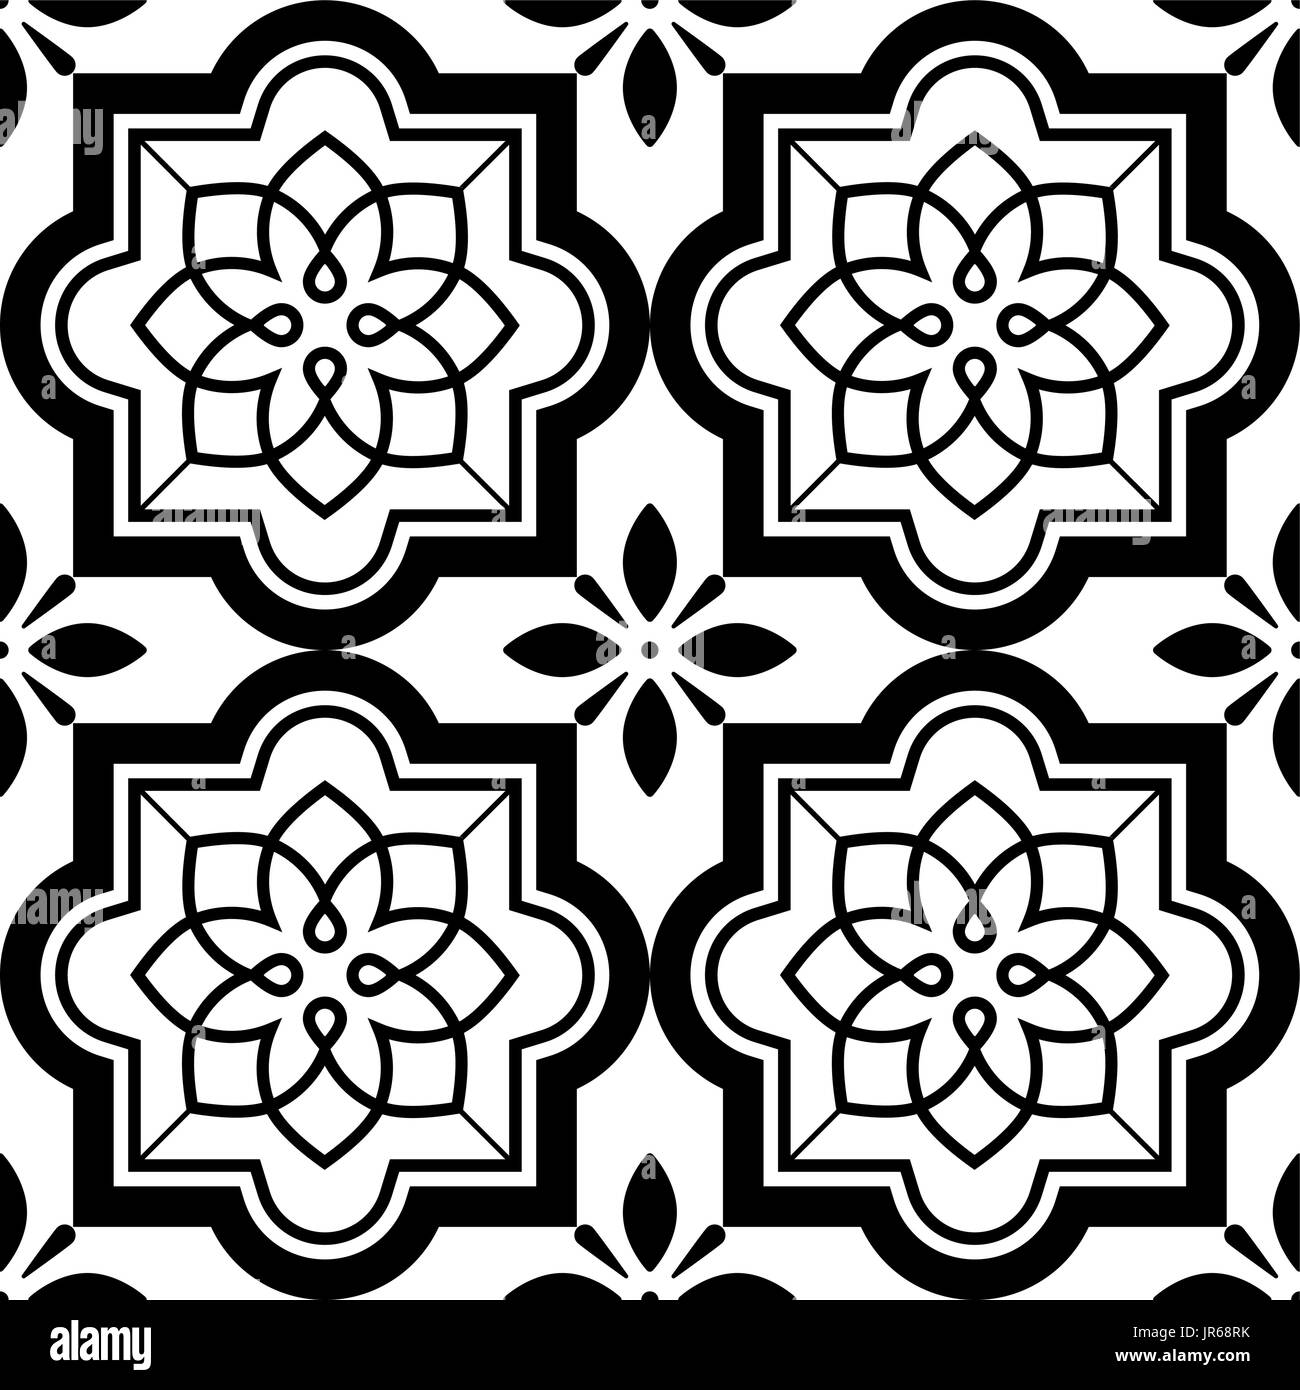 Vektor-Fliesen Muster, Lissabon floralen Mosaik Set, mediterrane nahtlose schwarz-weiß ornament Stock Vektor